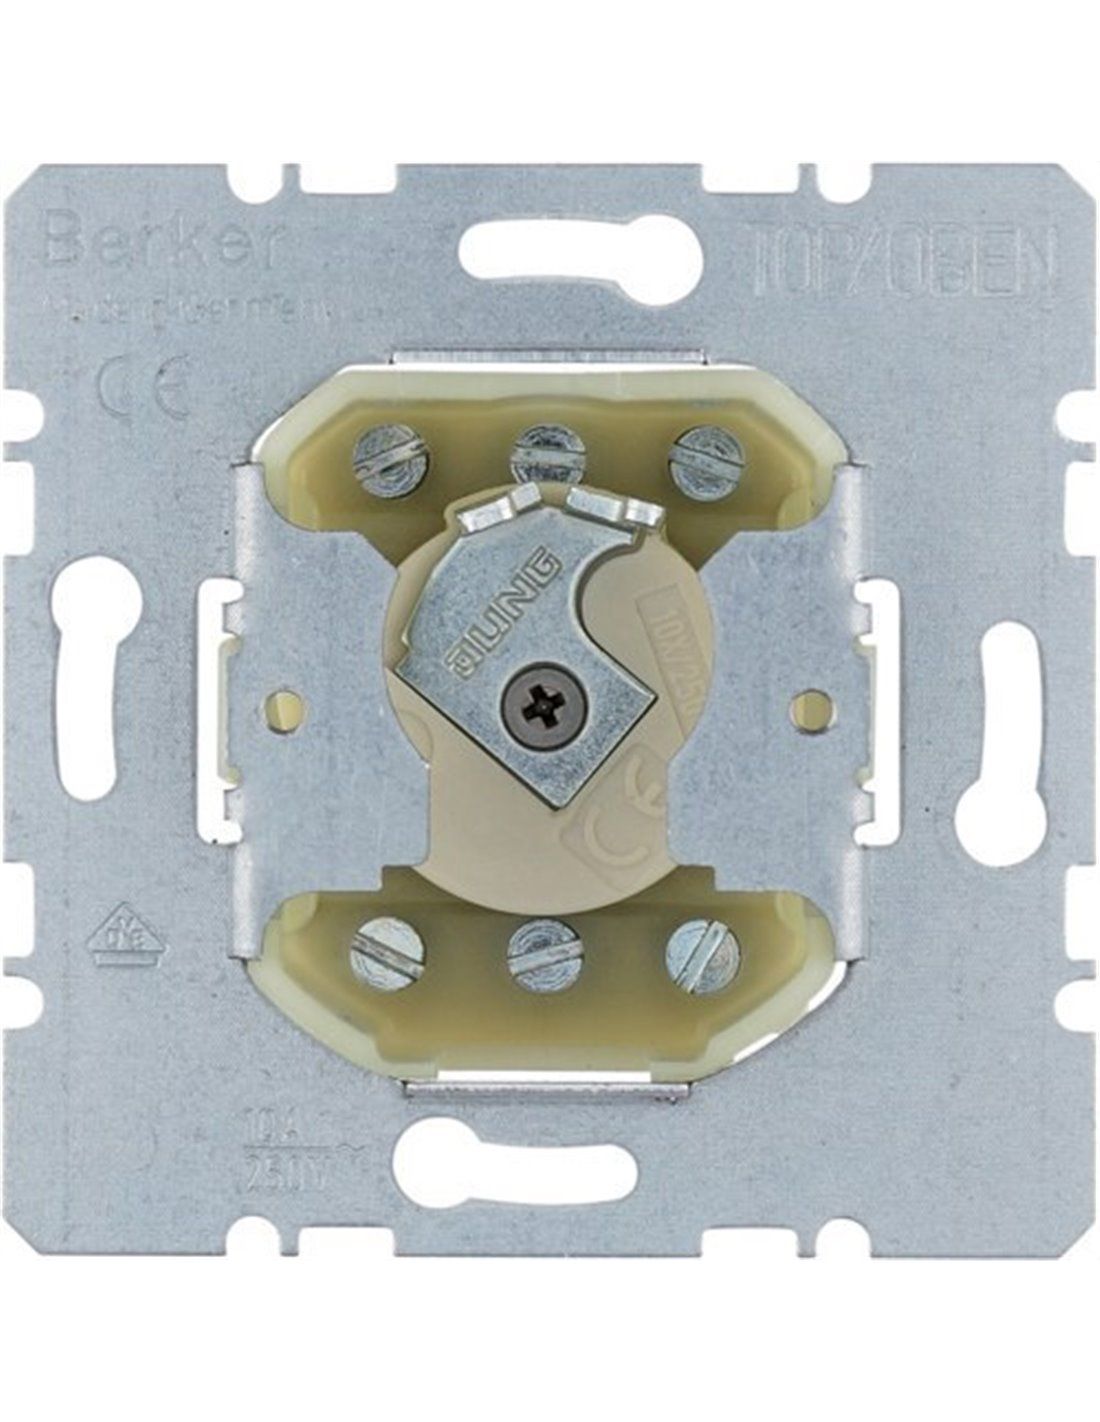 Interruptor de paso de diseño cilíndrico color blanco